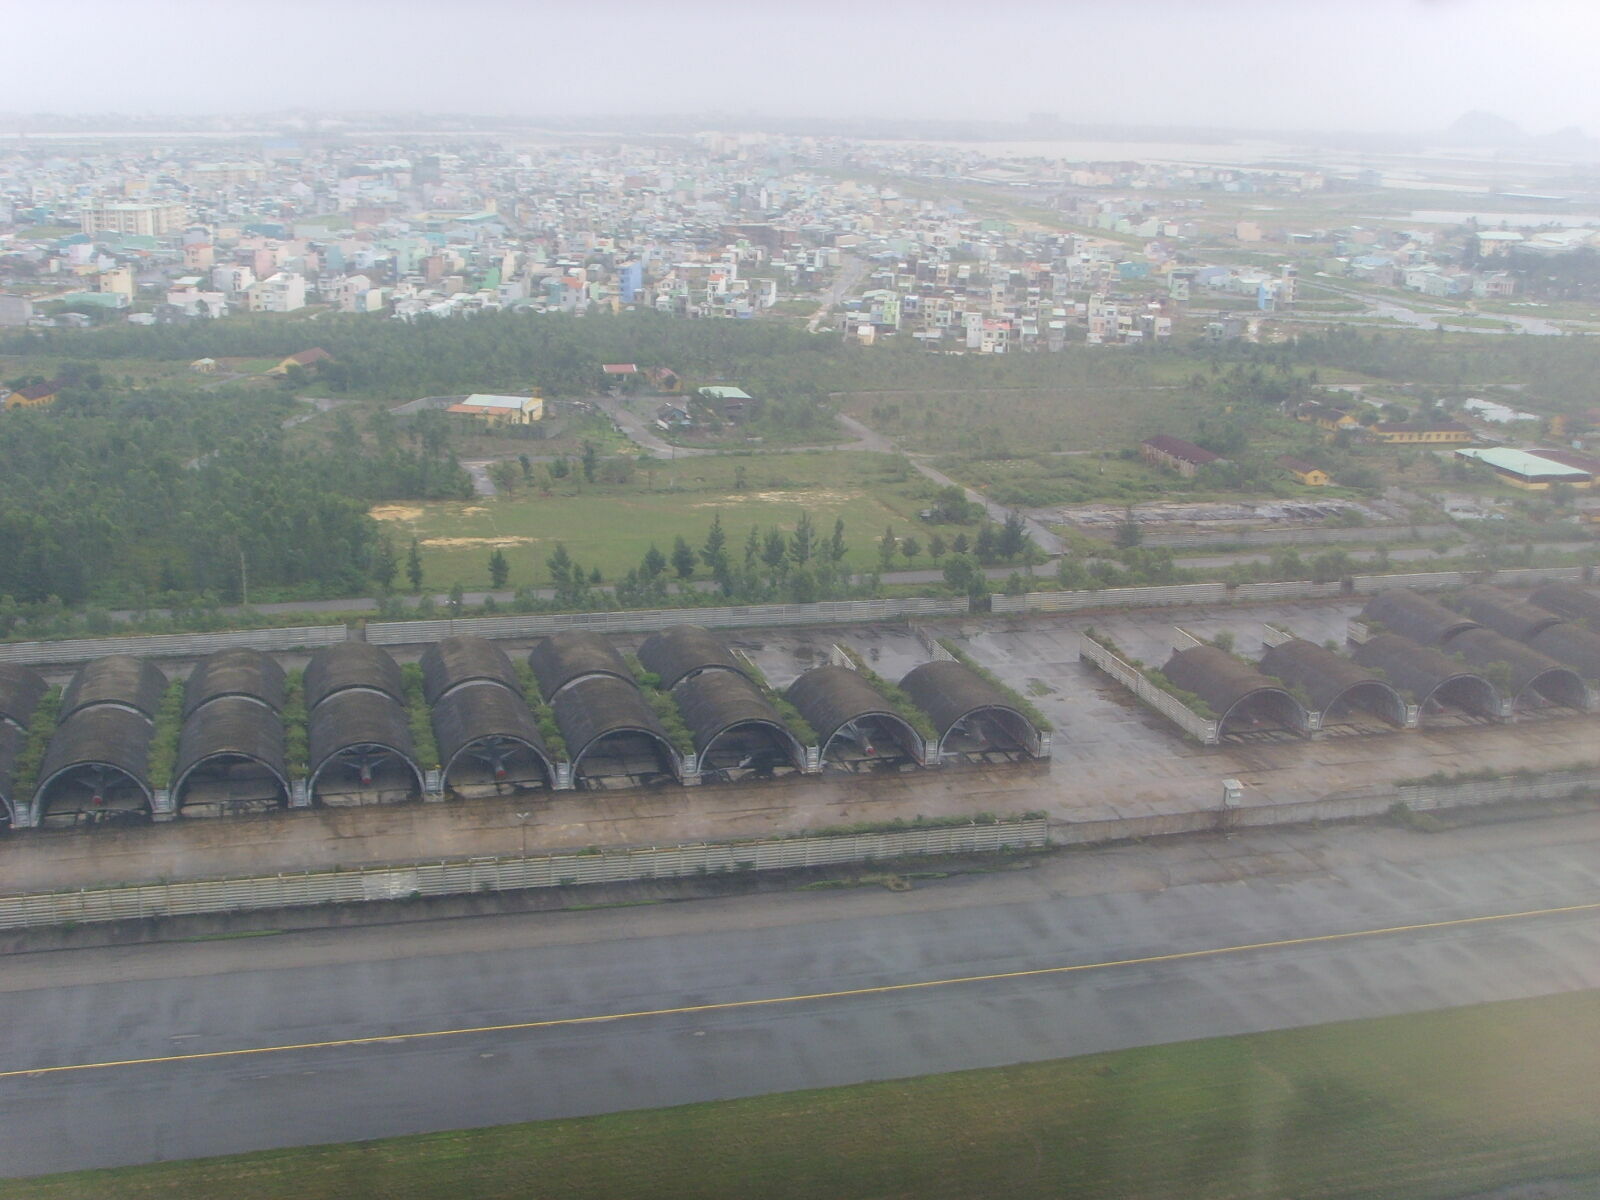 Построенные американцами по программе Concrete Sky защитные укрытия для авиационной техники на авиабазе Дананг, в настоящее время используемые ВВС Вьетнамской Народной армии (с) pinterest.com